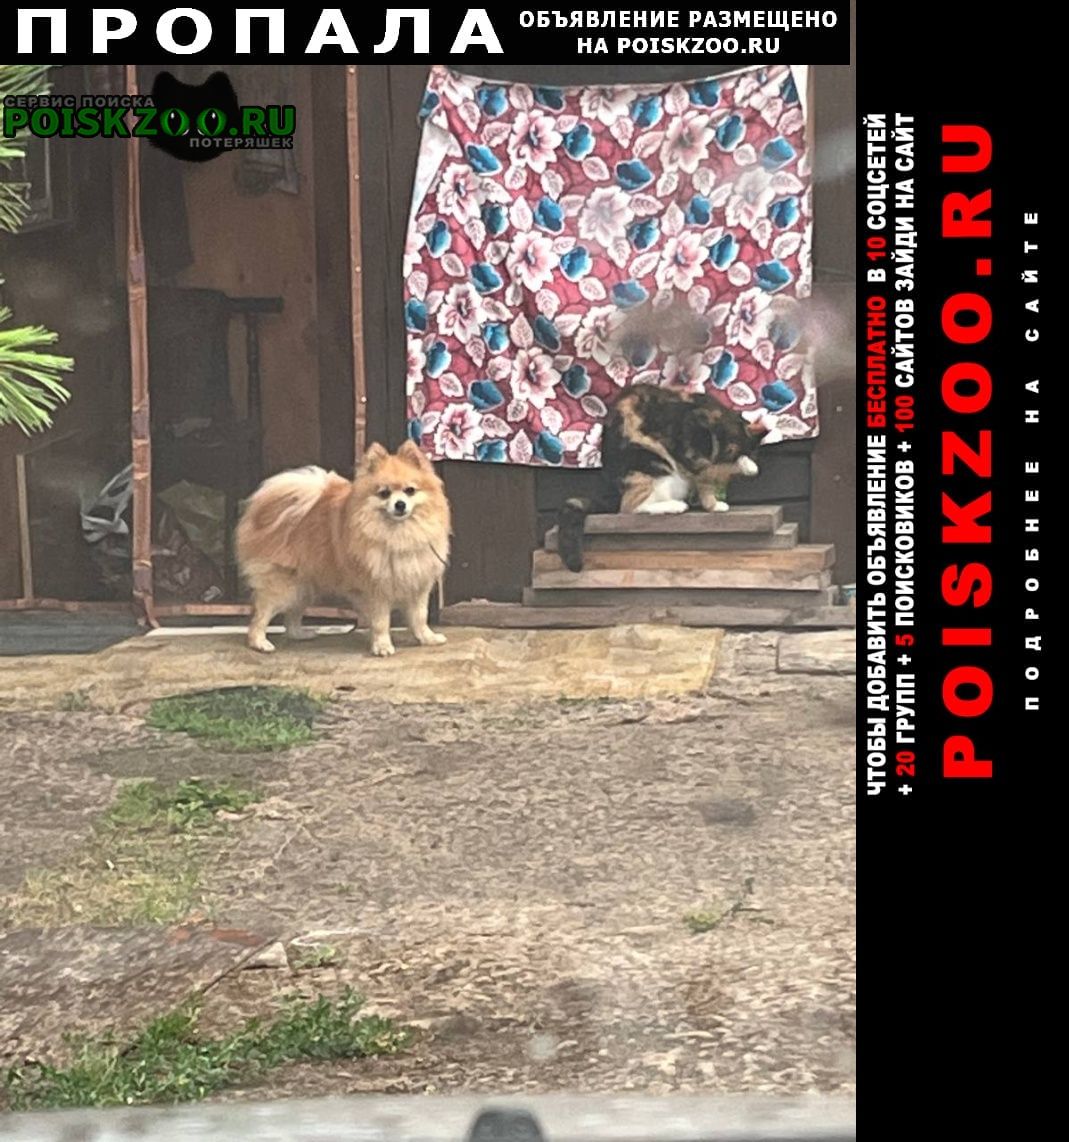 Пропала собака кобель померанский шпиц, рыжий окрас 10 лет пот Комсомольск-на-Амуре